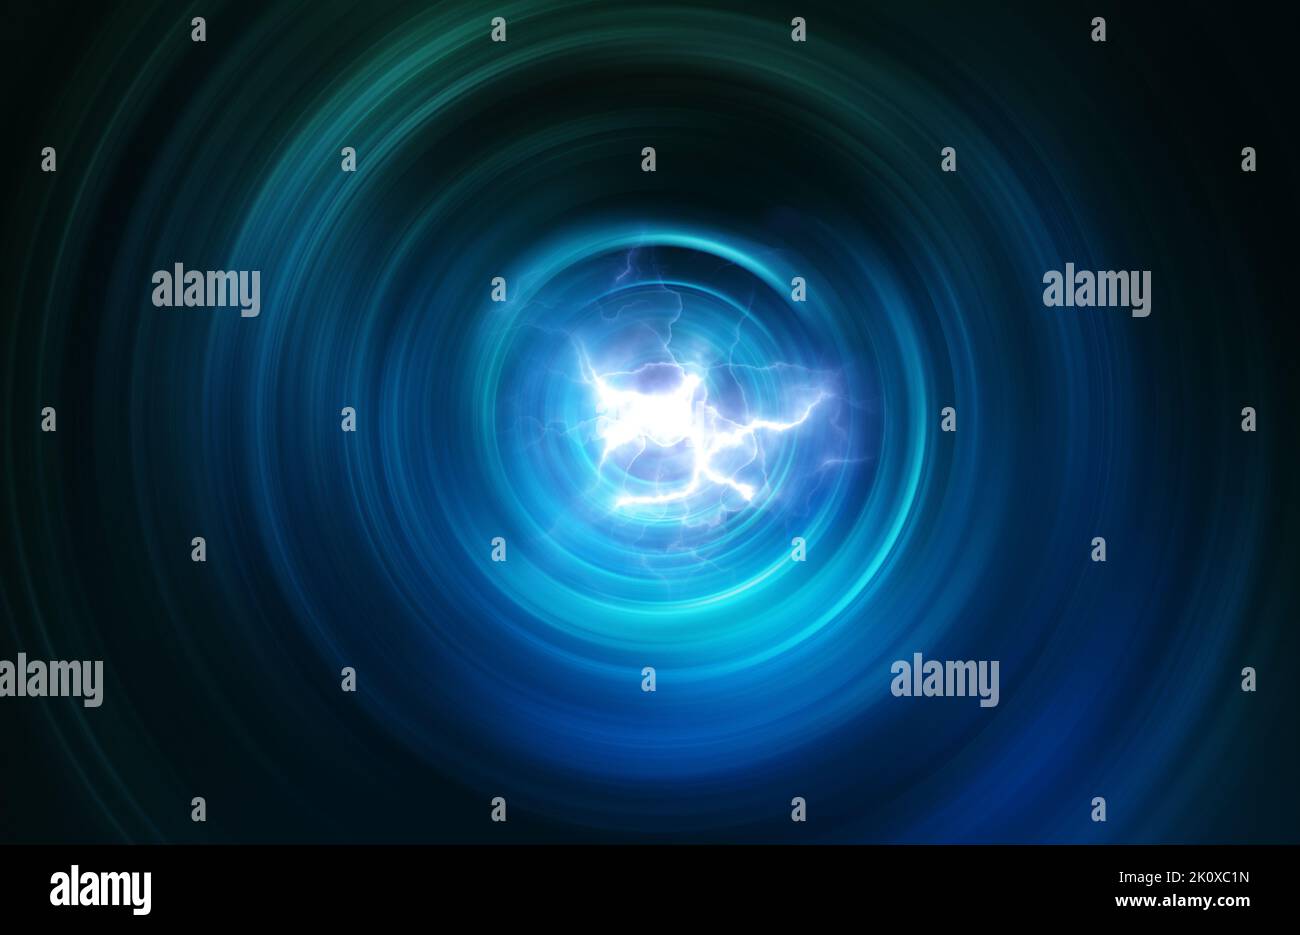 sfondo radiale con asbtract blu con luci di energia al centro Foto Stock